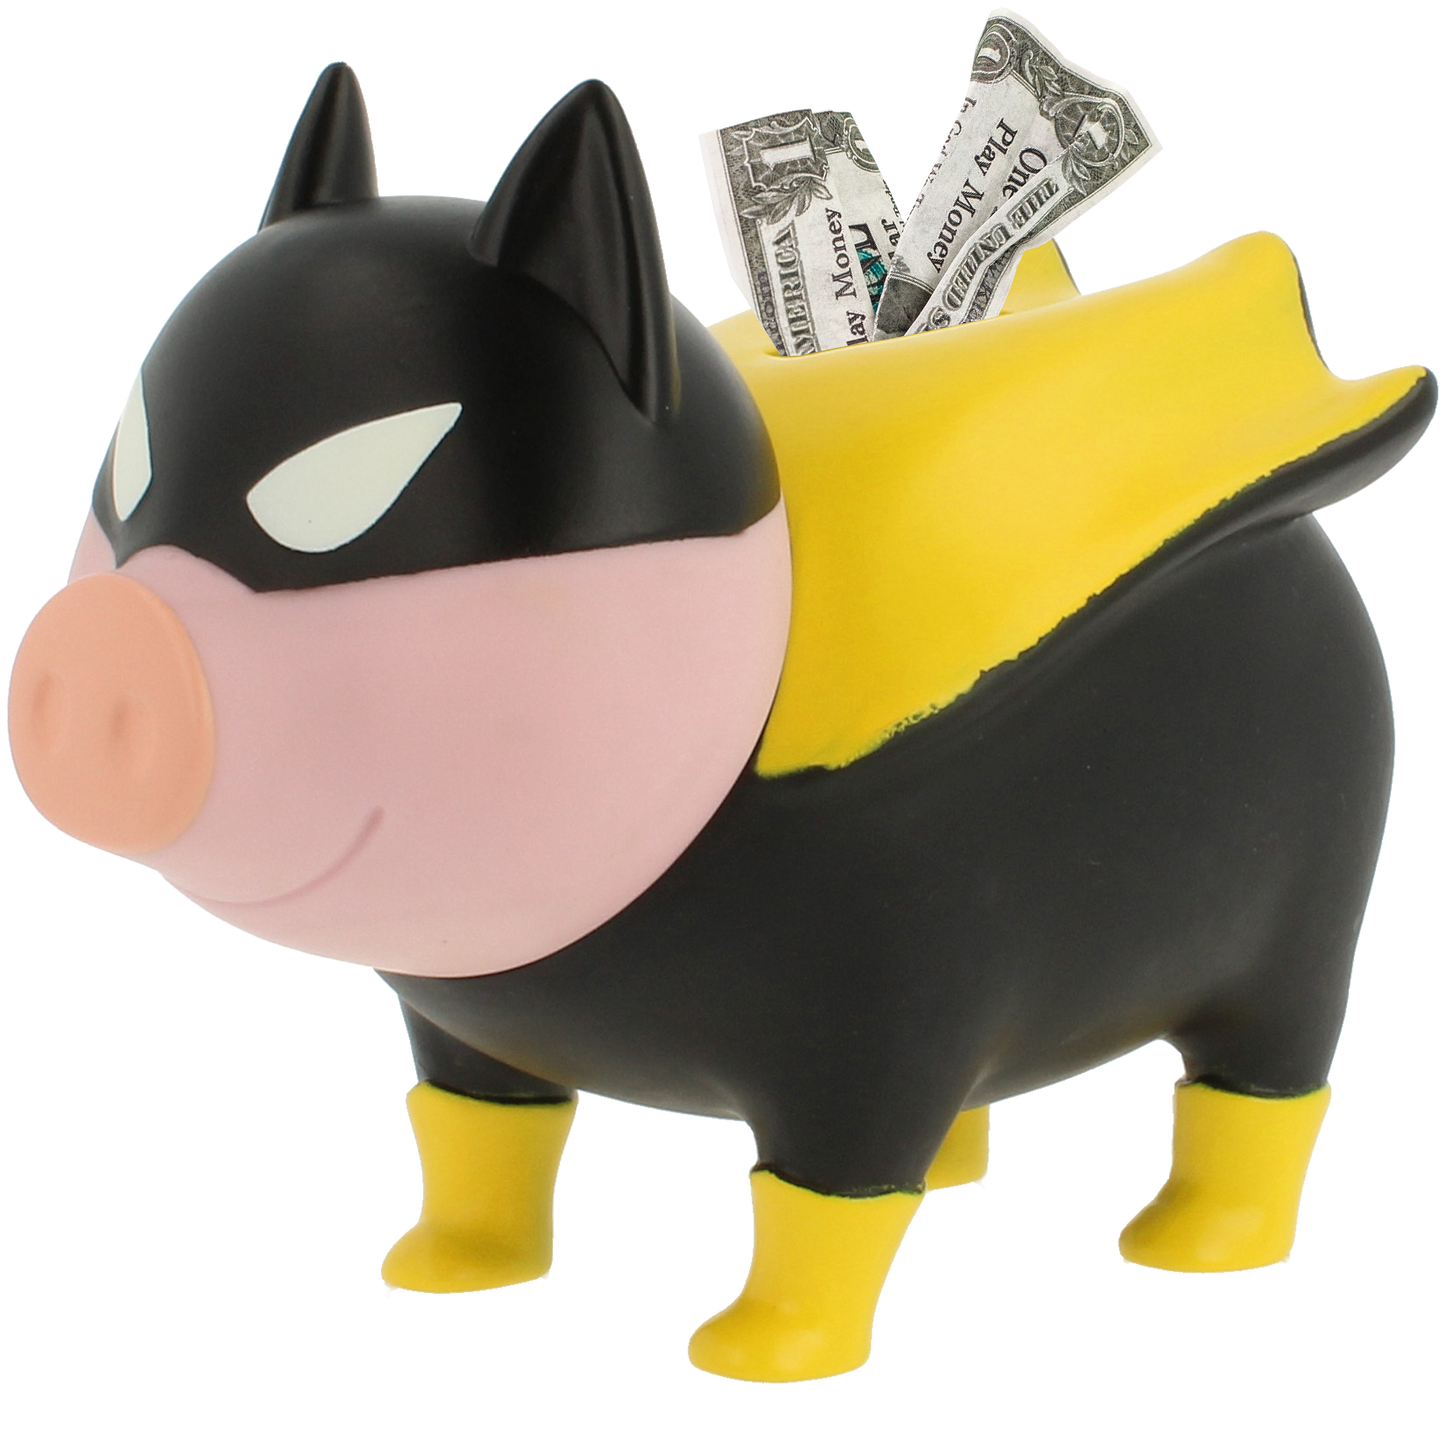 BatCochon Lilalu Cochon Batman | Boutique originale universretro family concept store